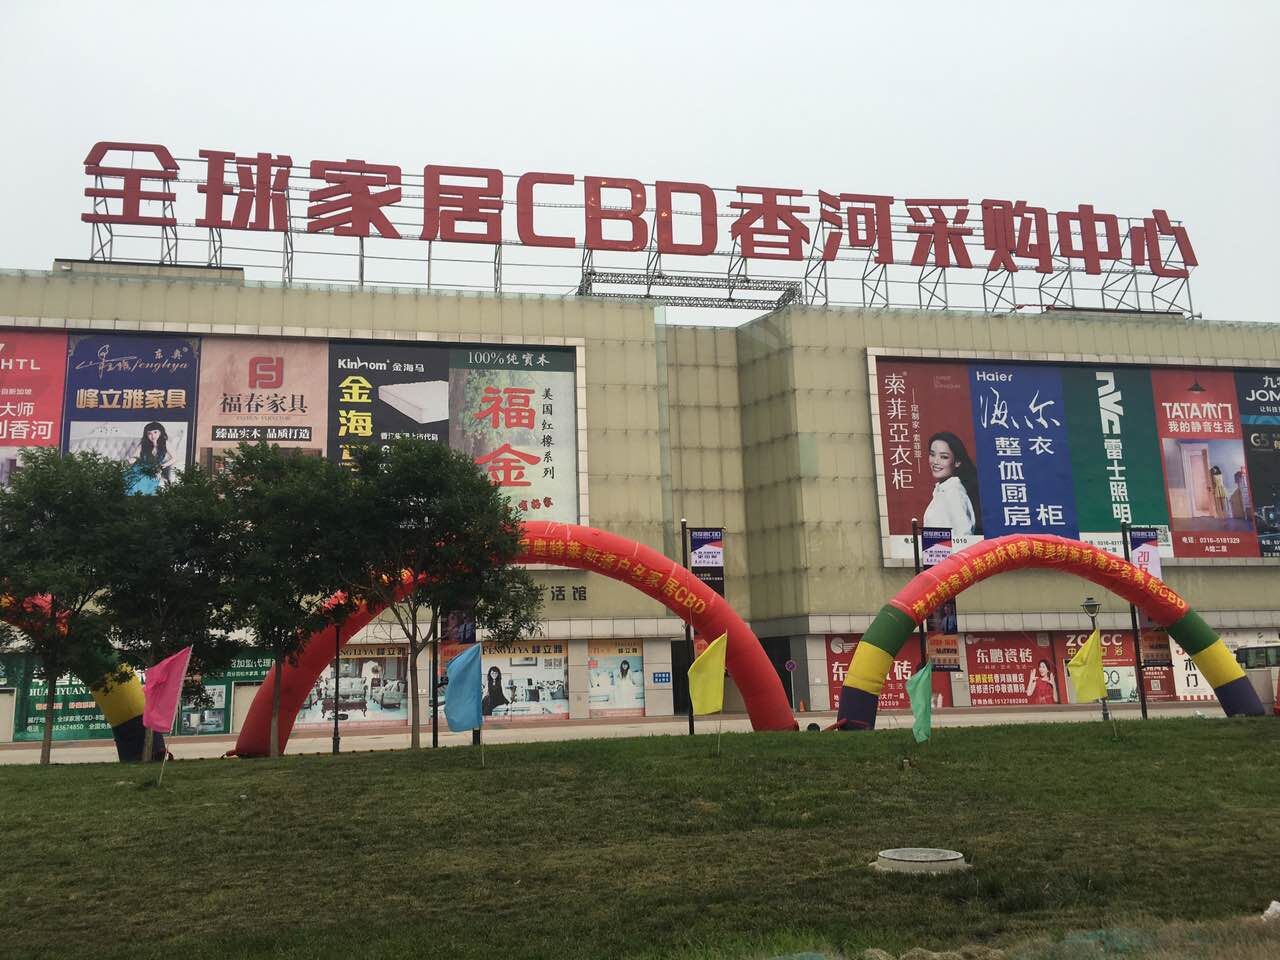 祝贺北京香江楼顶LED吸塑发光字改造工程顺利完工。